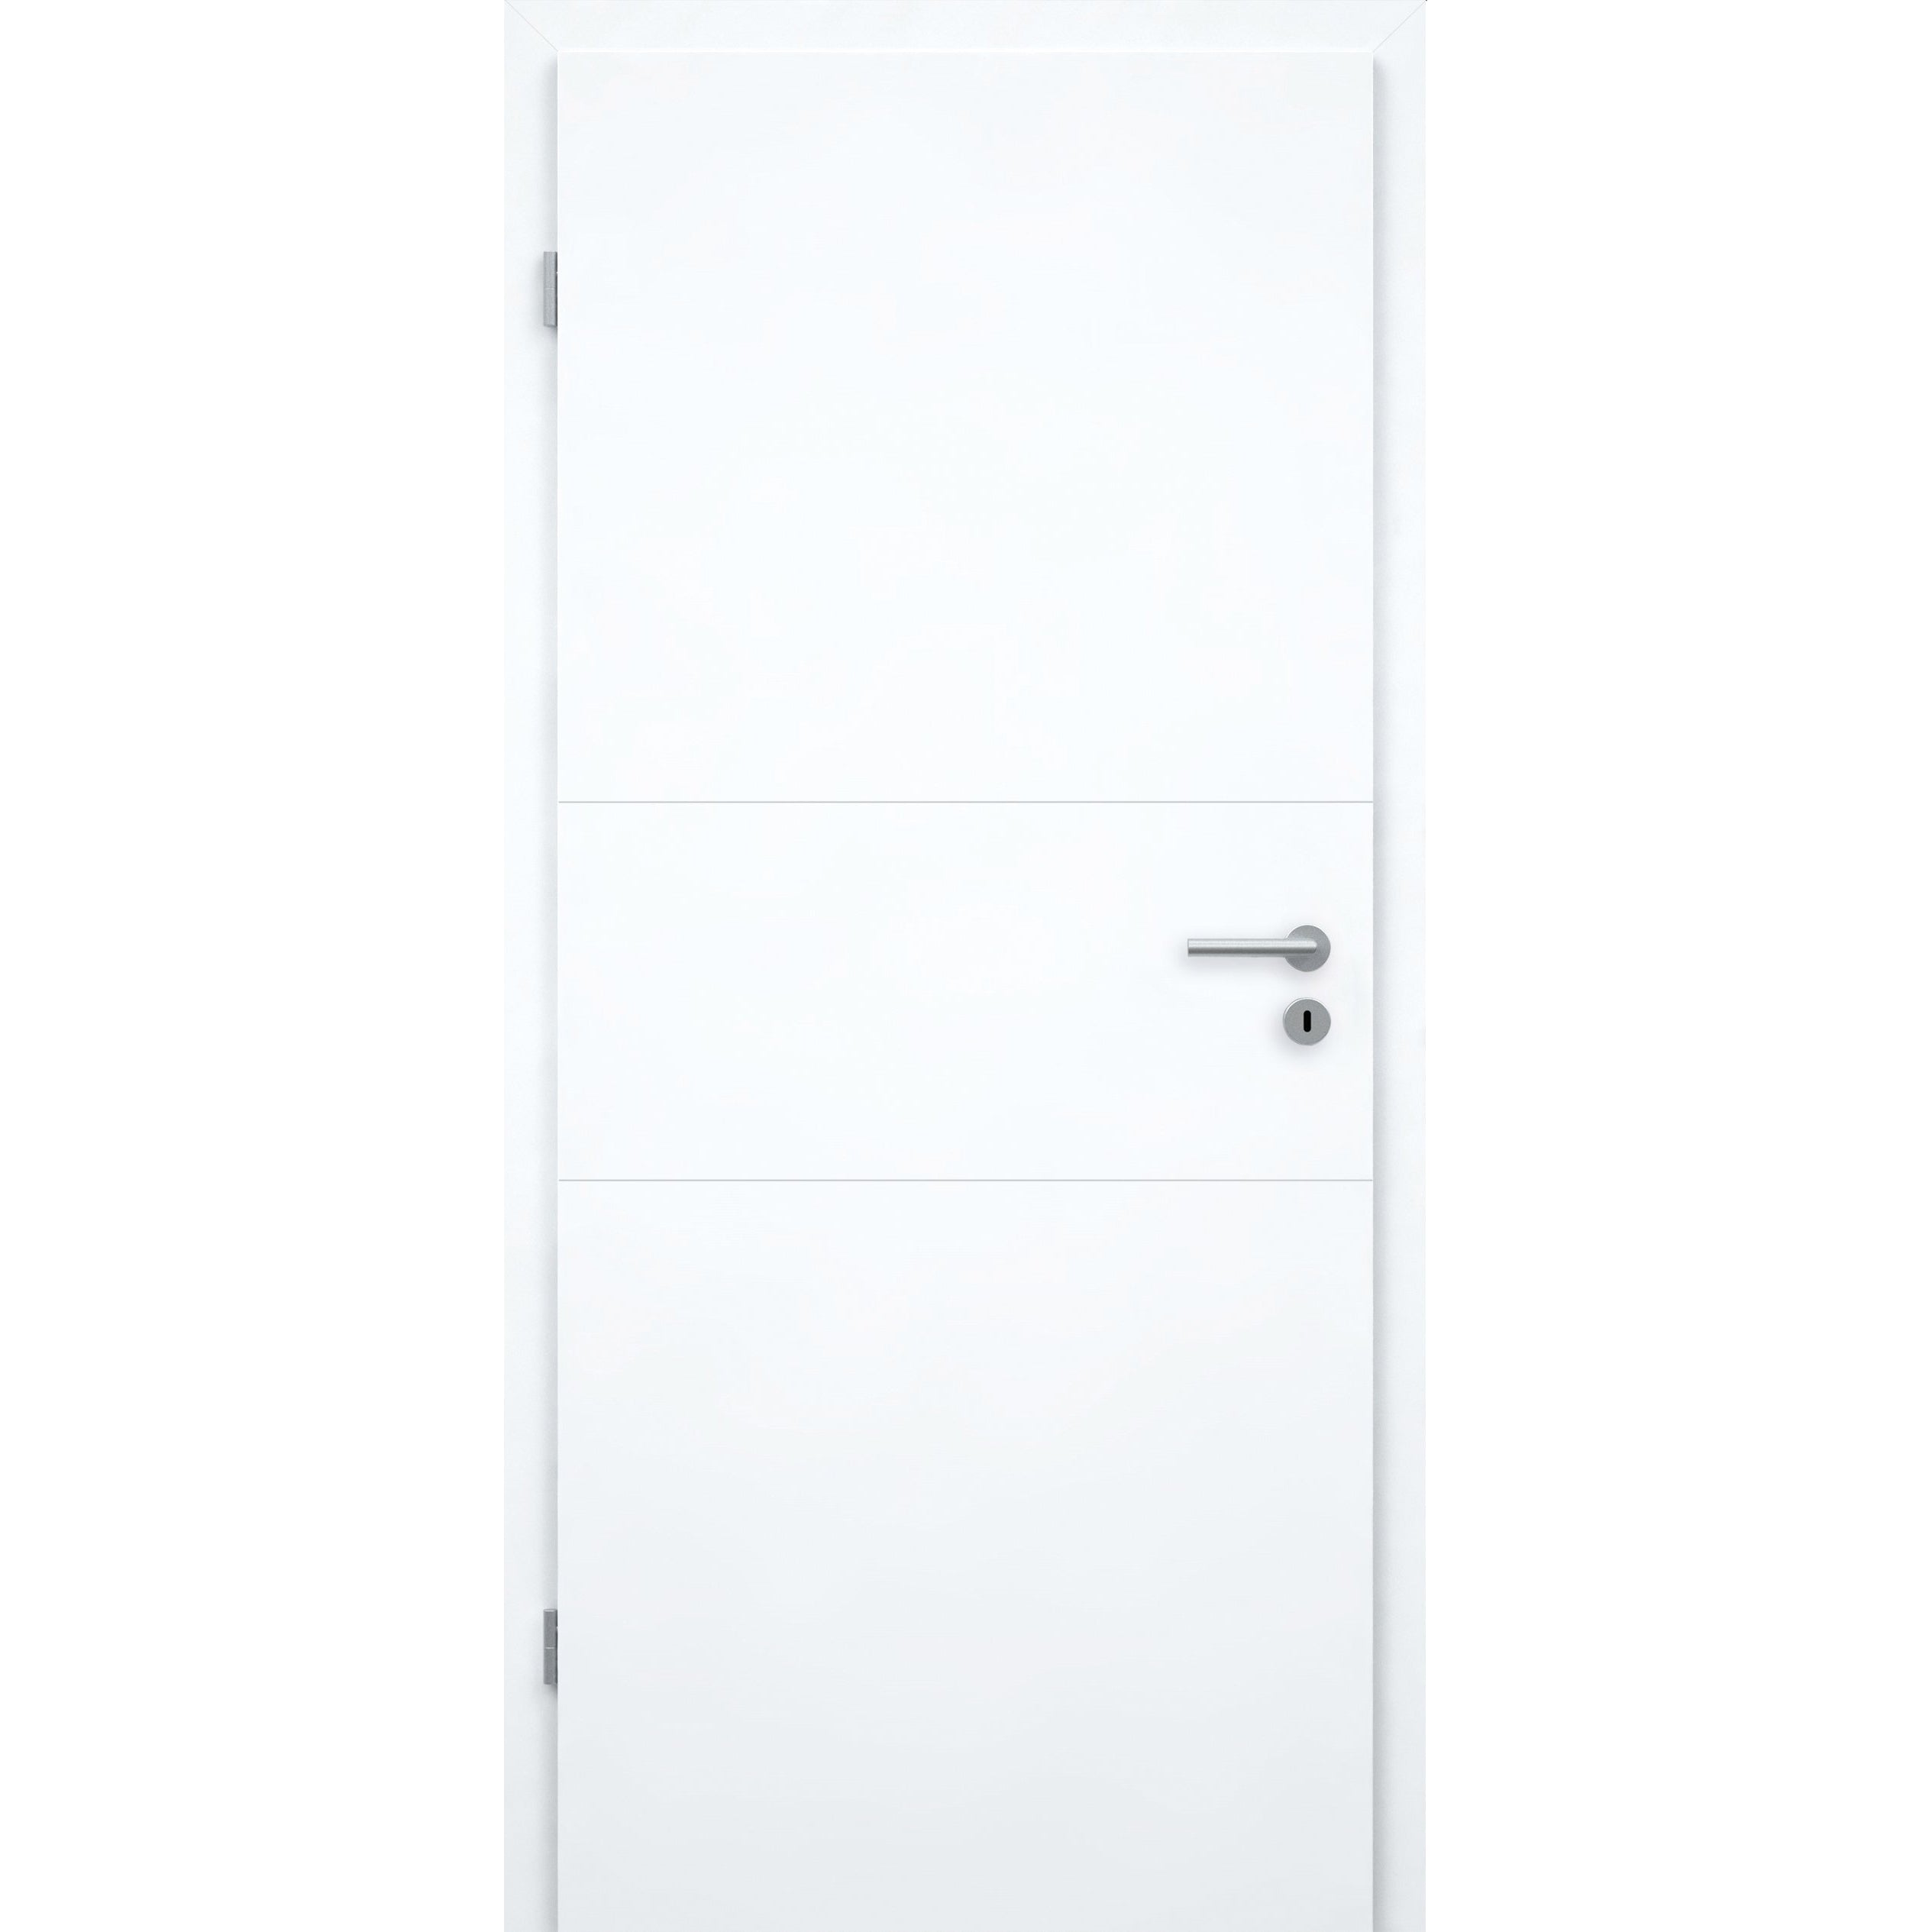 Wohnungseingangstür mit Zarge brillant-weiß 2 Rillen quer Designkante SK2 / KK3 - Modell Designtür Q23